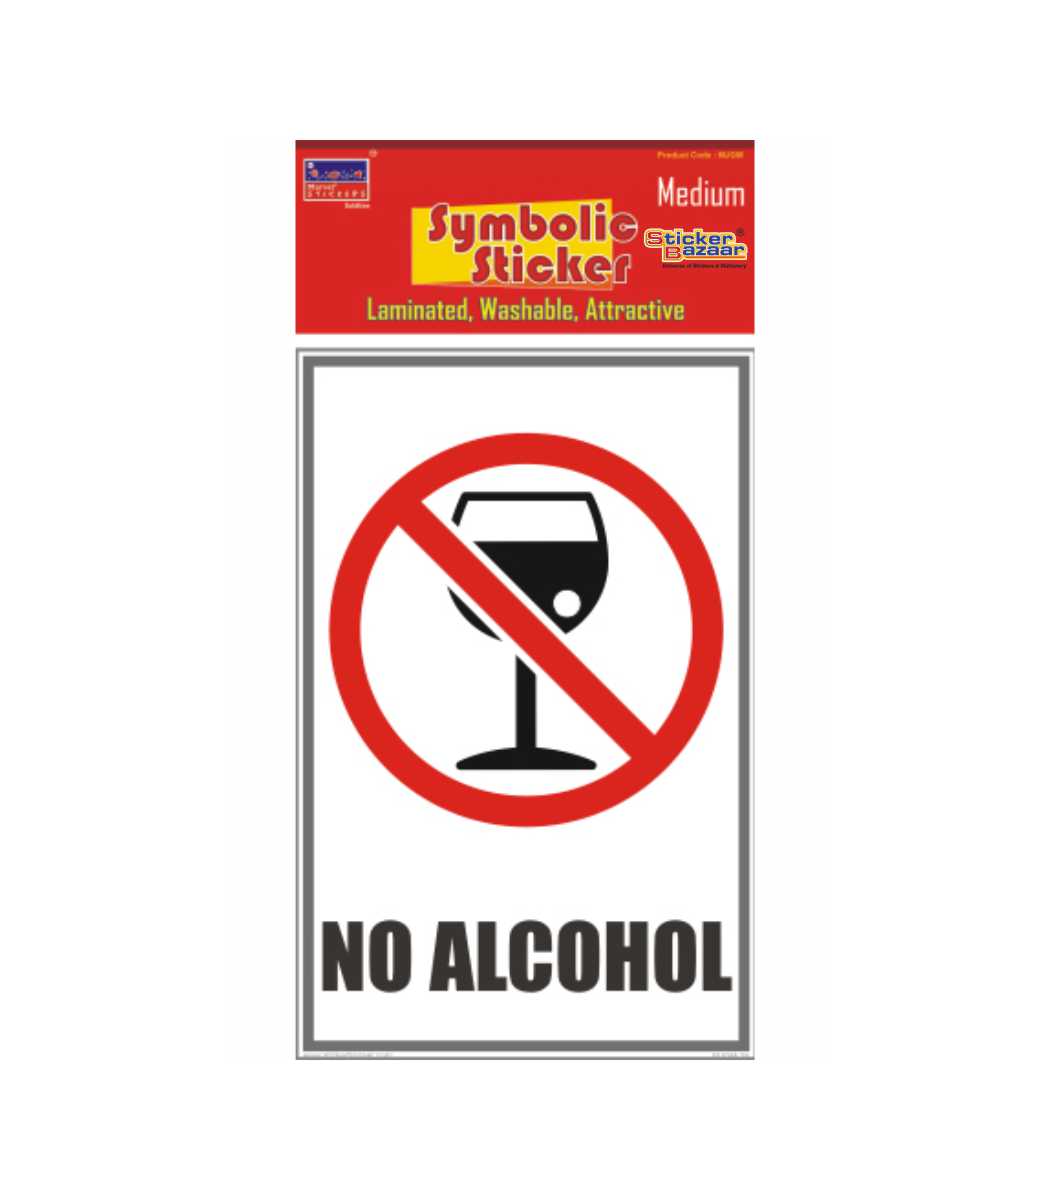 No Alcohol Medium Symbolic Sticker